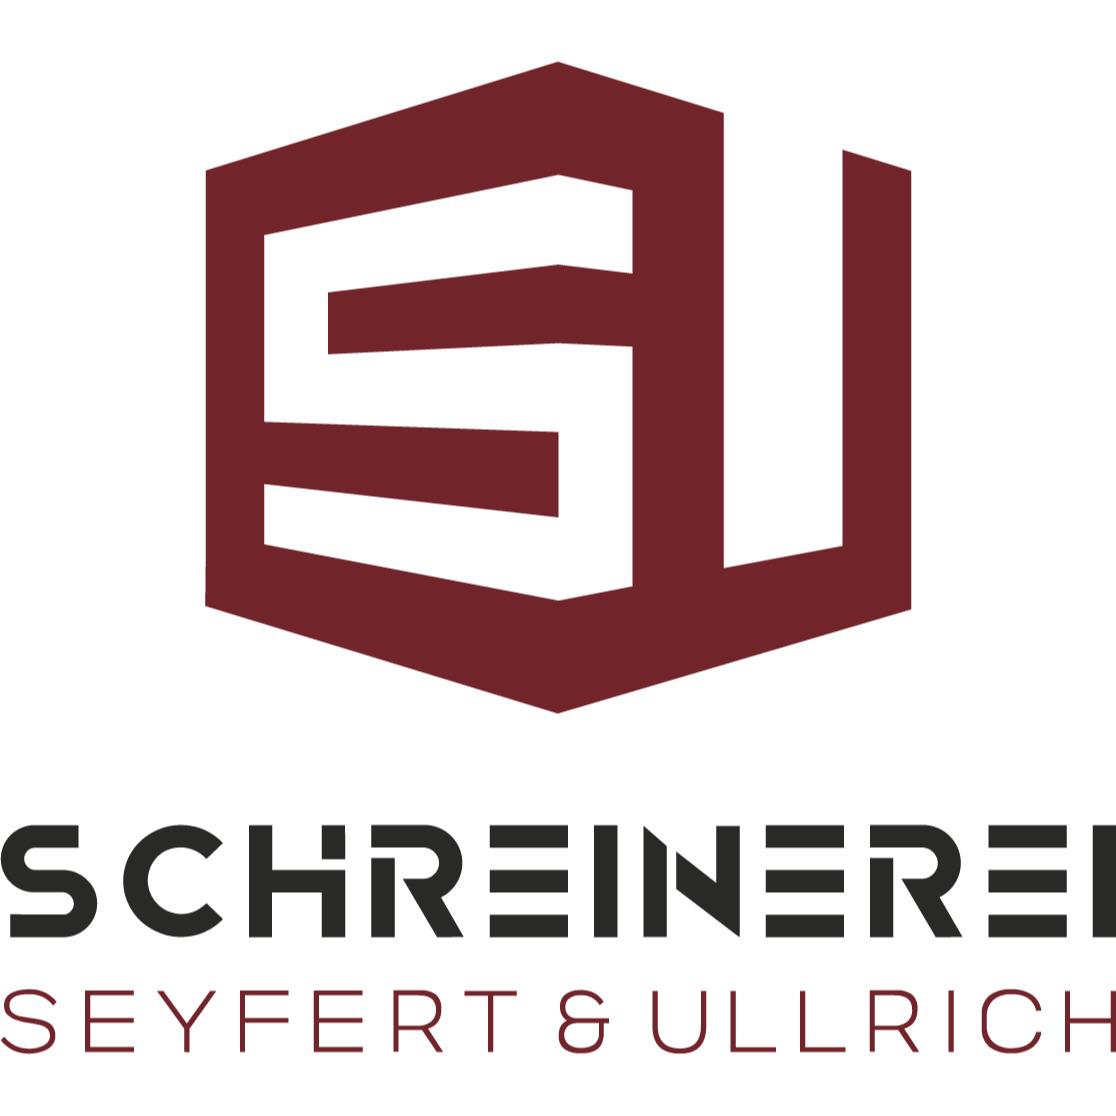 Schreinerei Seyfert & Ullrich  